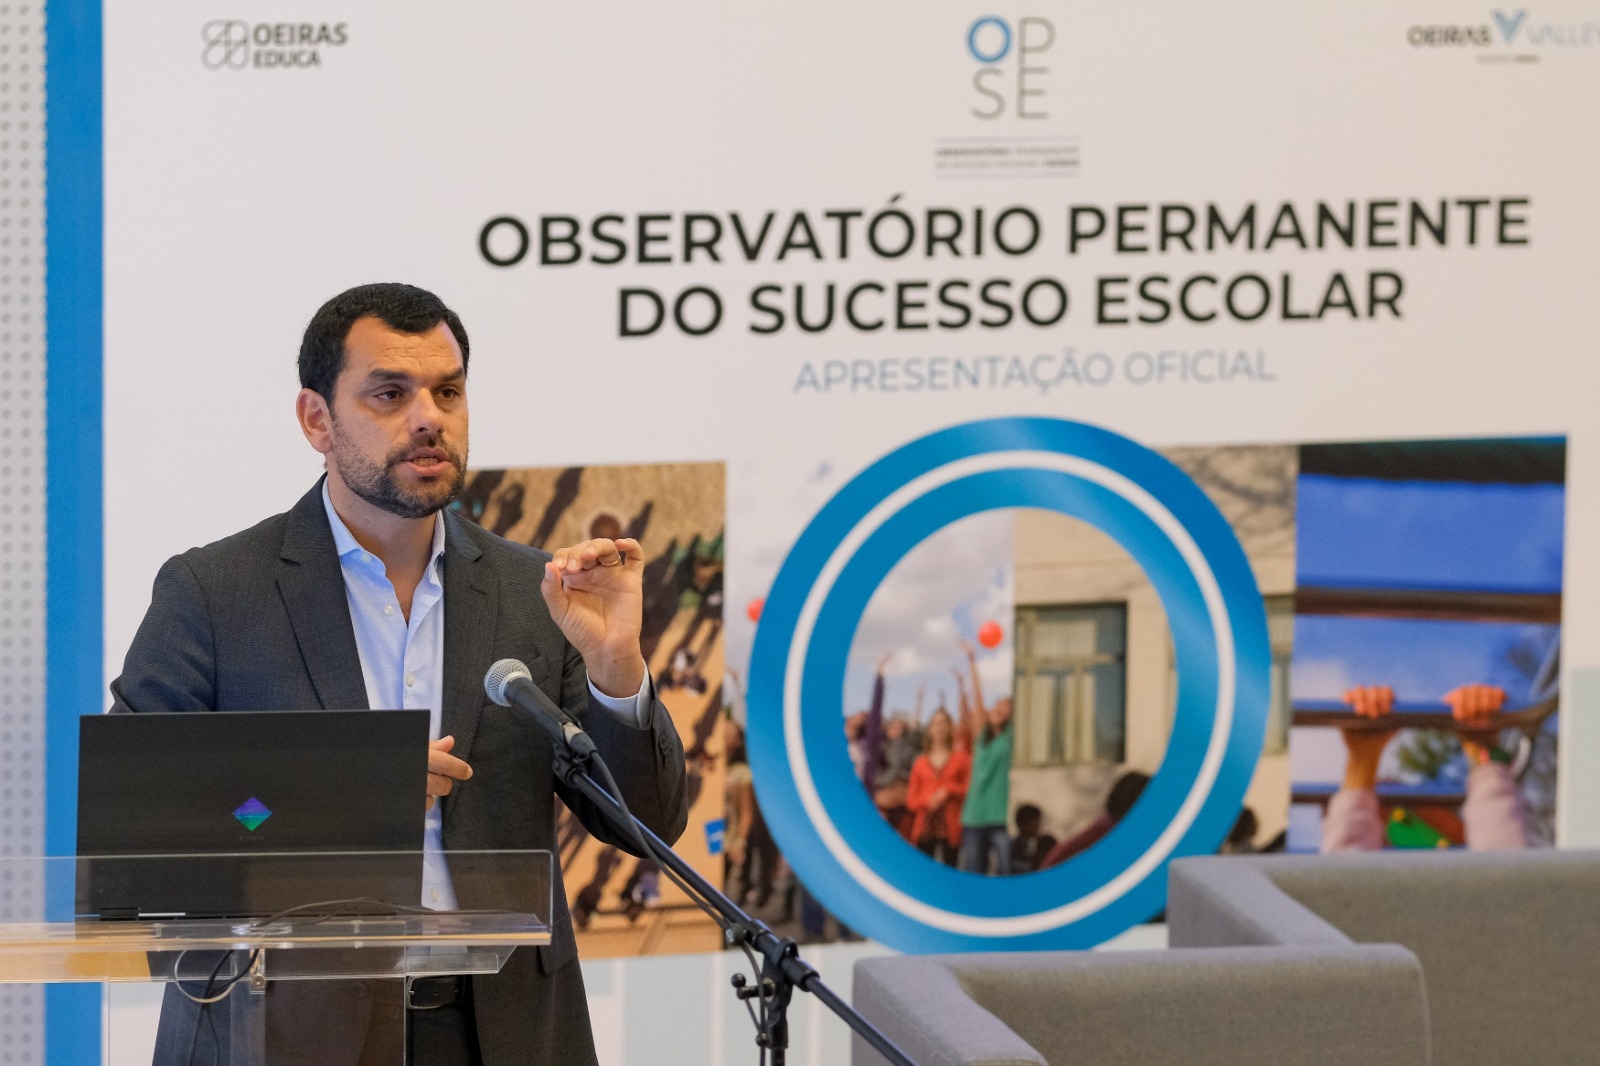 Observatório Permanente do Sucesso Escolar | OPSE apresentado oficialmente no auditório da Escola Secundária Sebastião e Silva, 